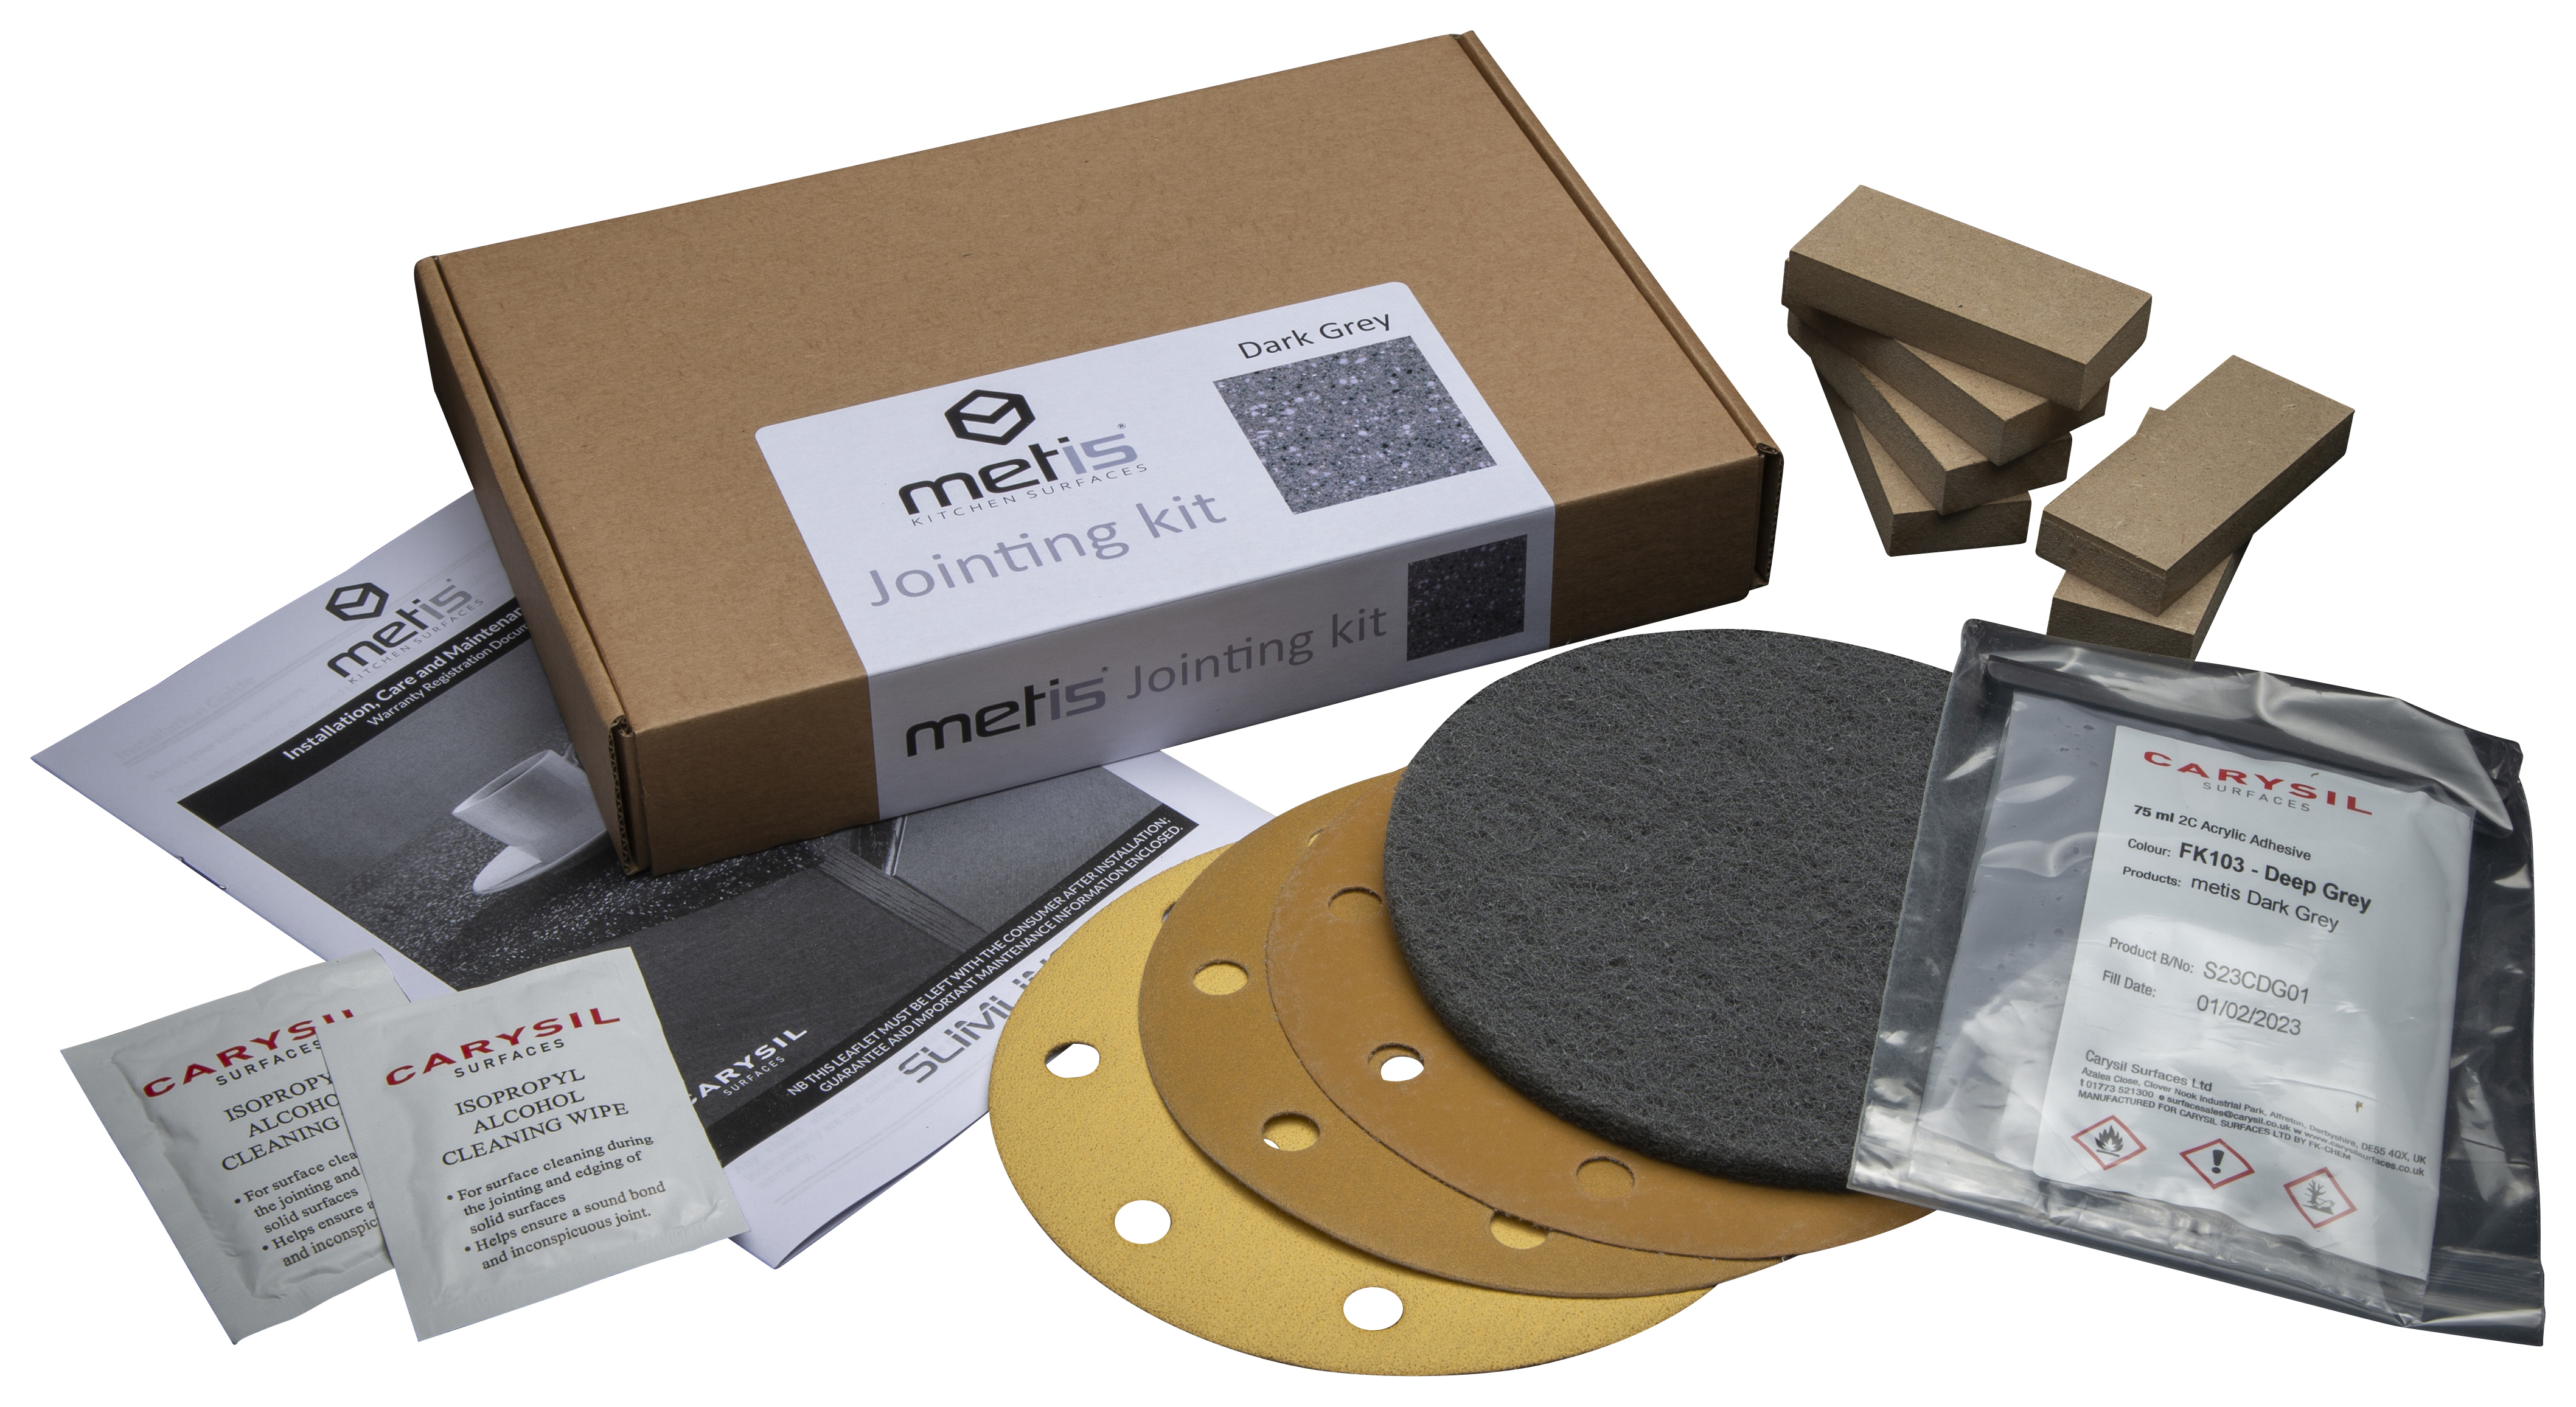 Metis dark grey joint kit